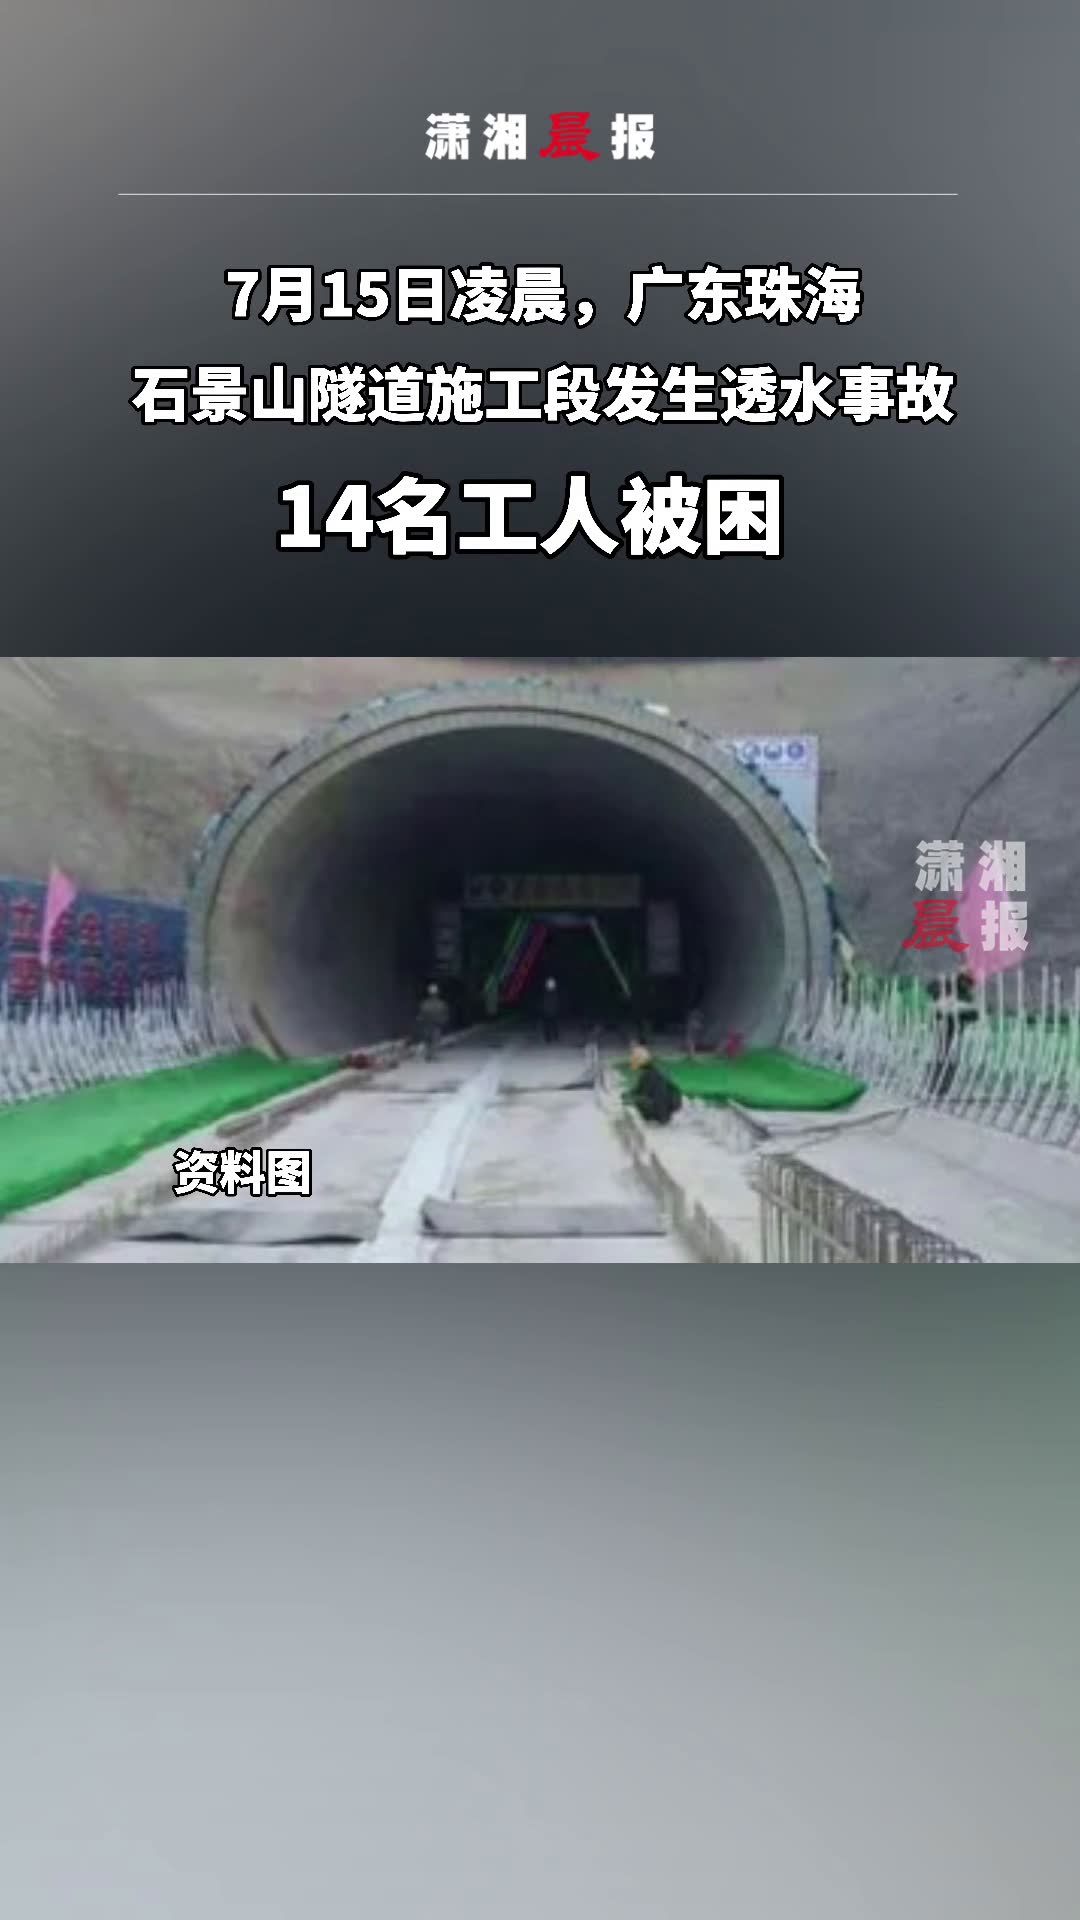 7月15日凌晨,广东珠海.石景山隧道施工段发生透水事故